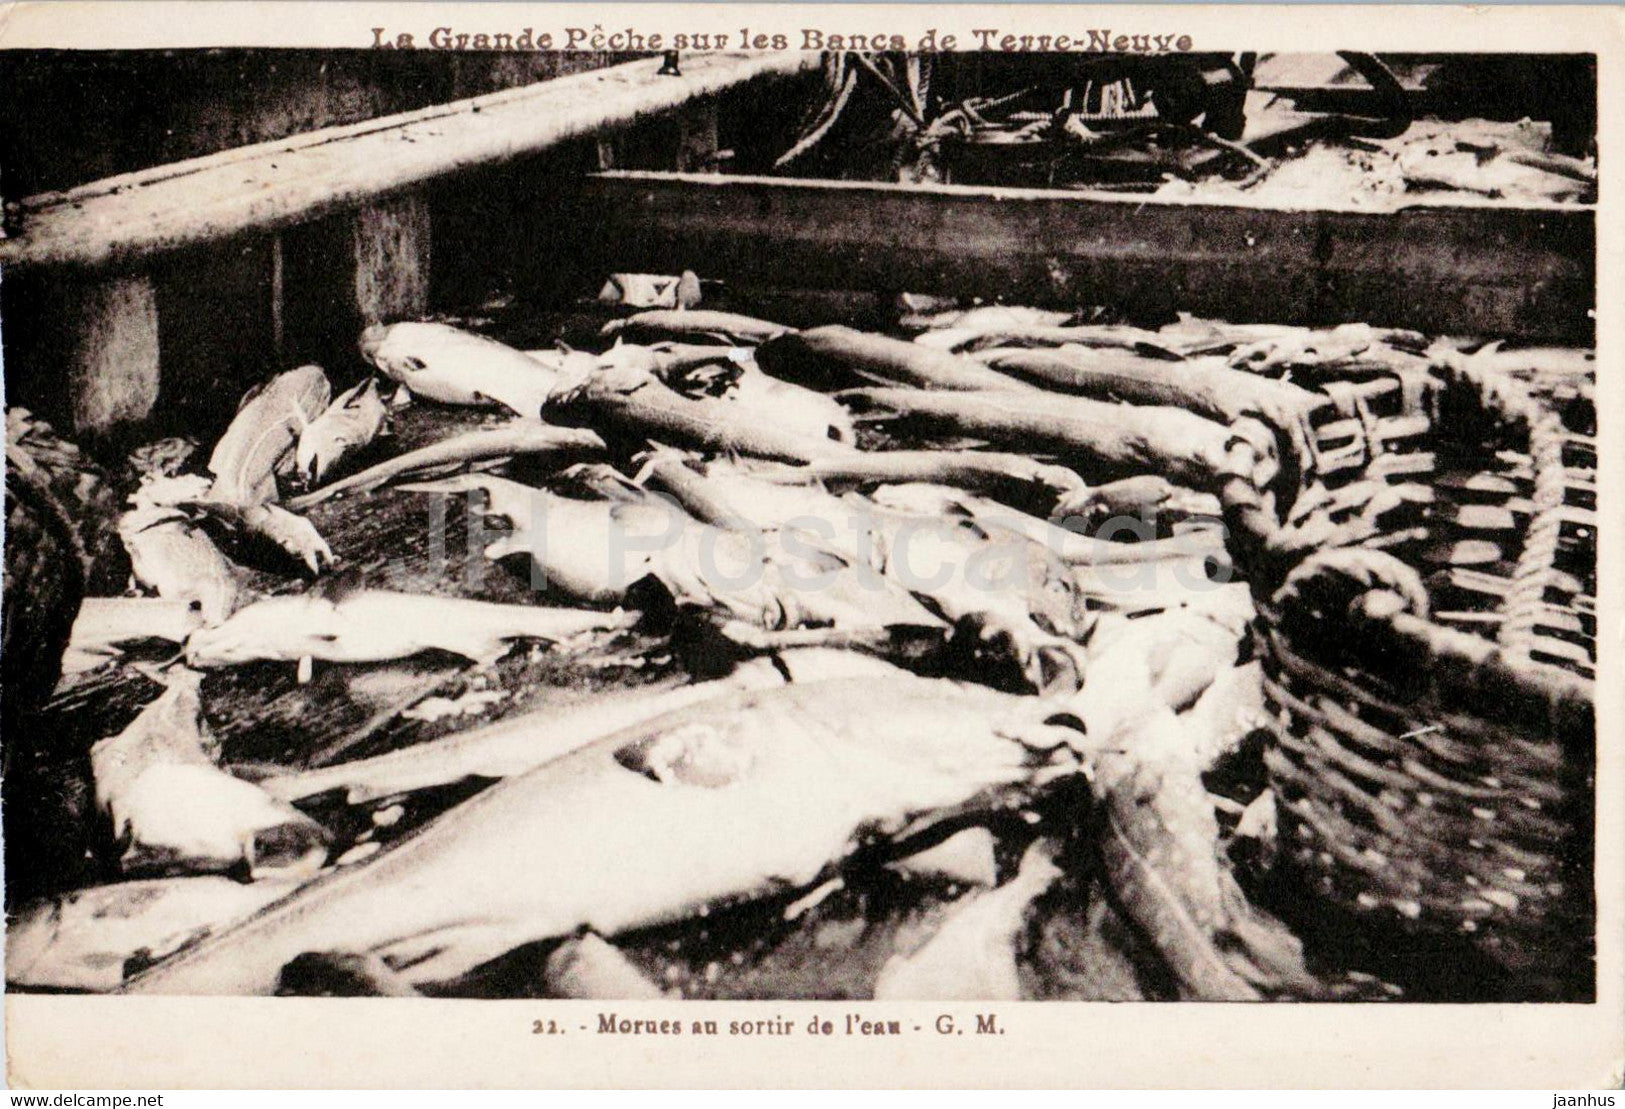 Morues au sortir de l'eau - cod - fish - 22 - old postcard - France - unused - JH Postcards